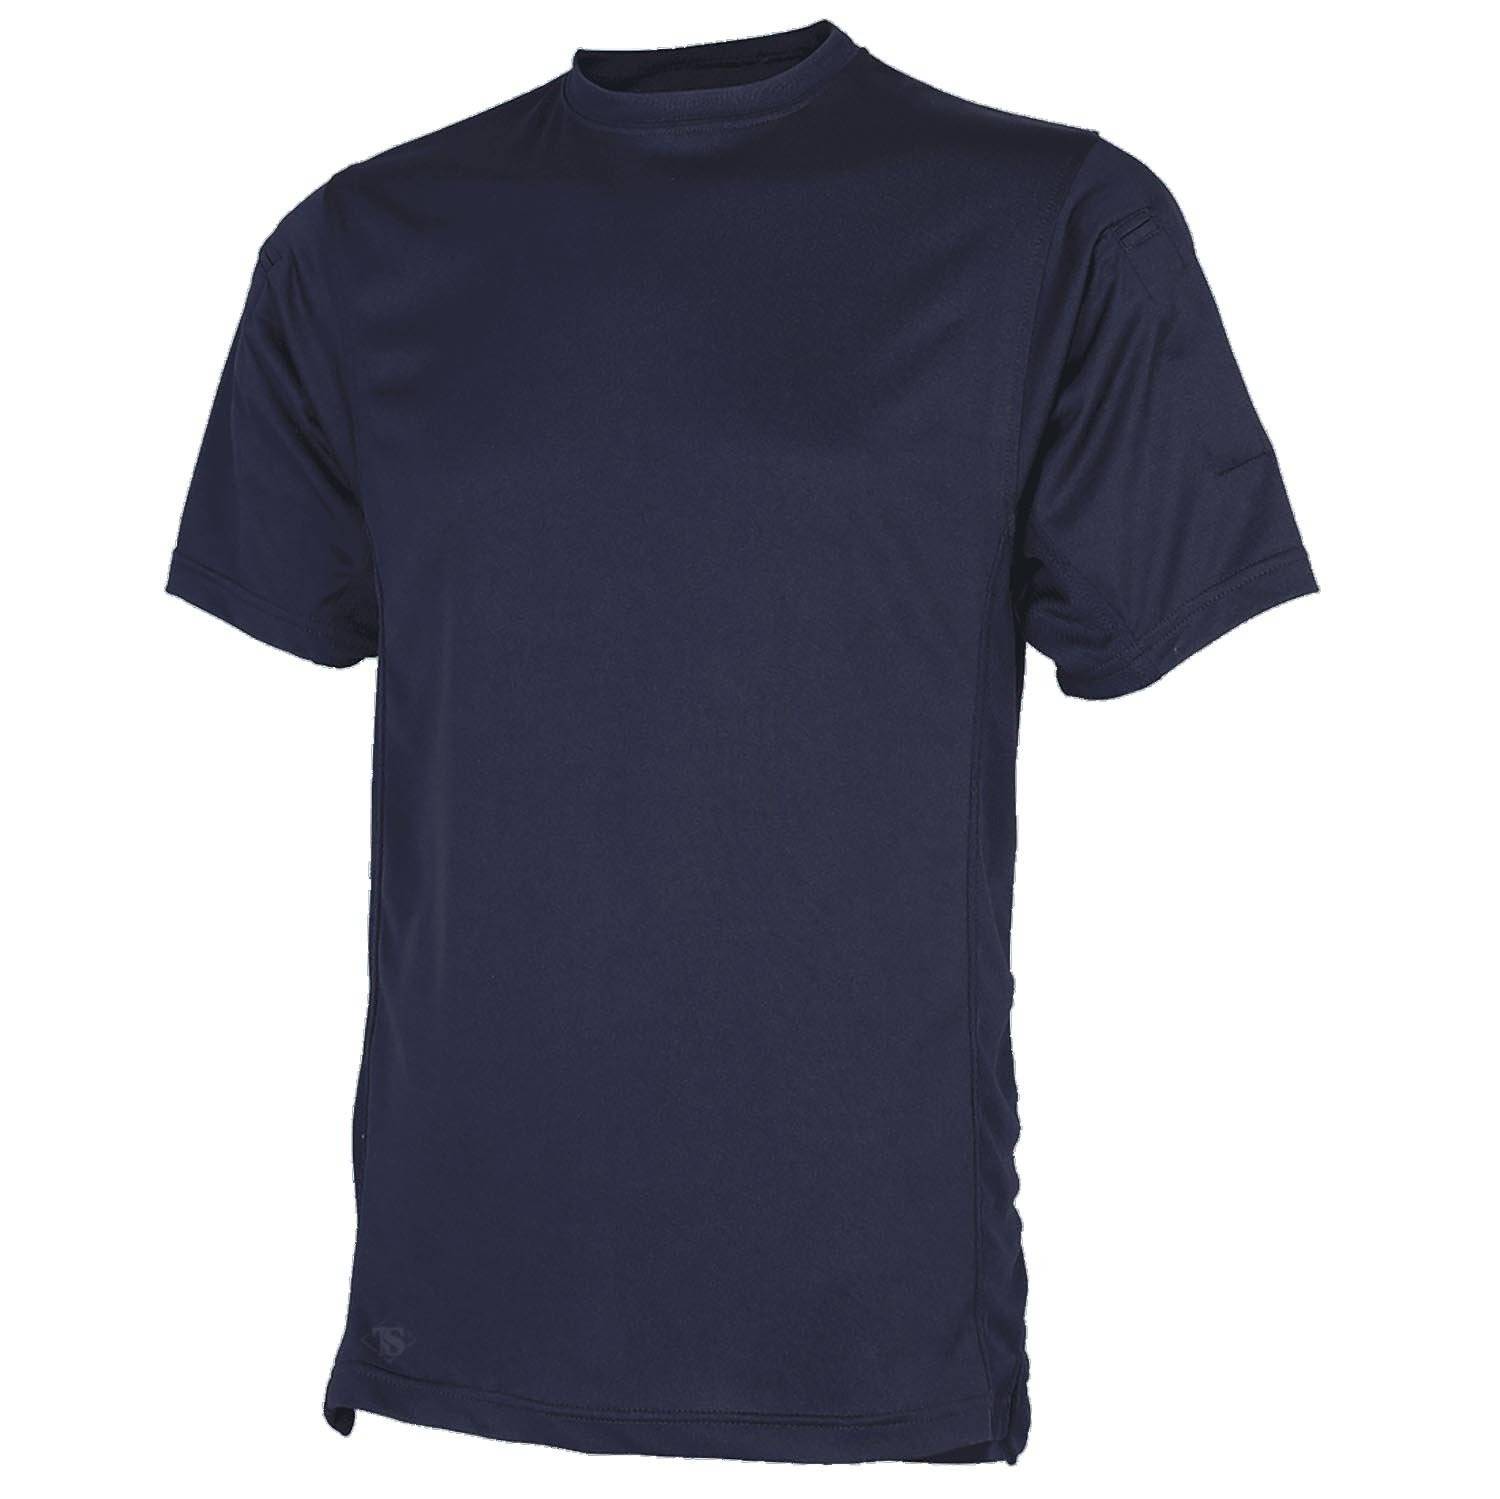 Tru-Spec Men's Eco Tec Tac T-Shirt